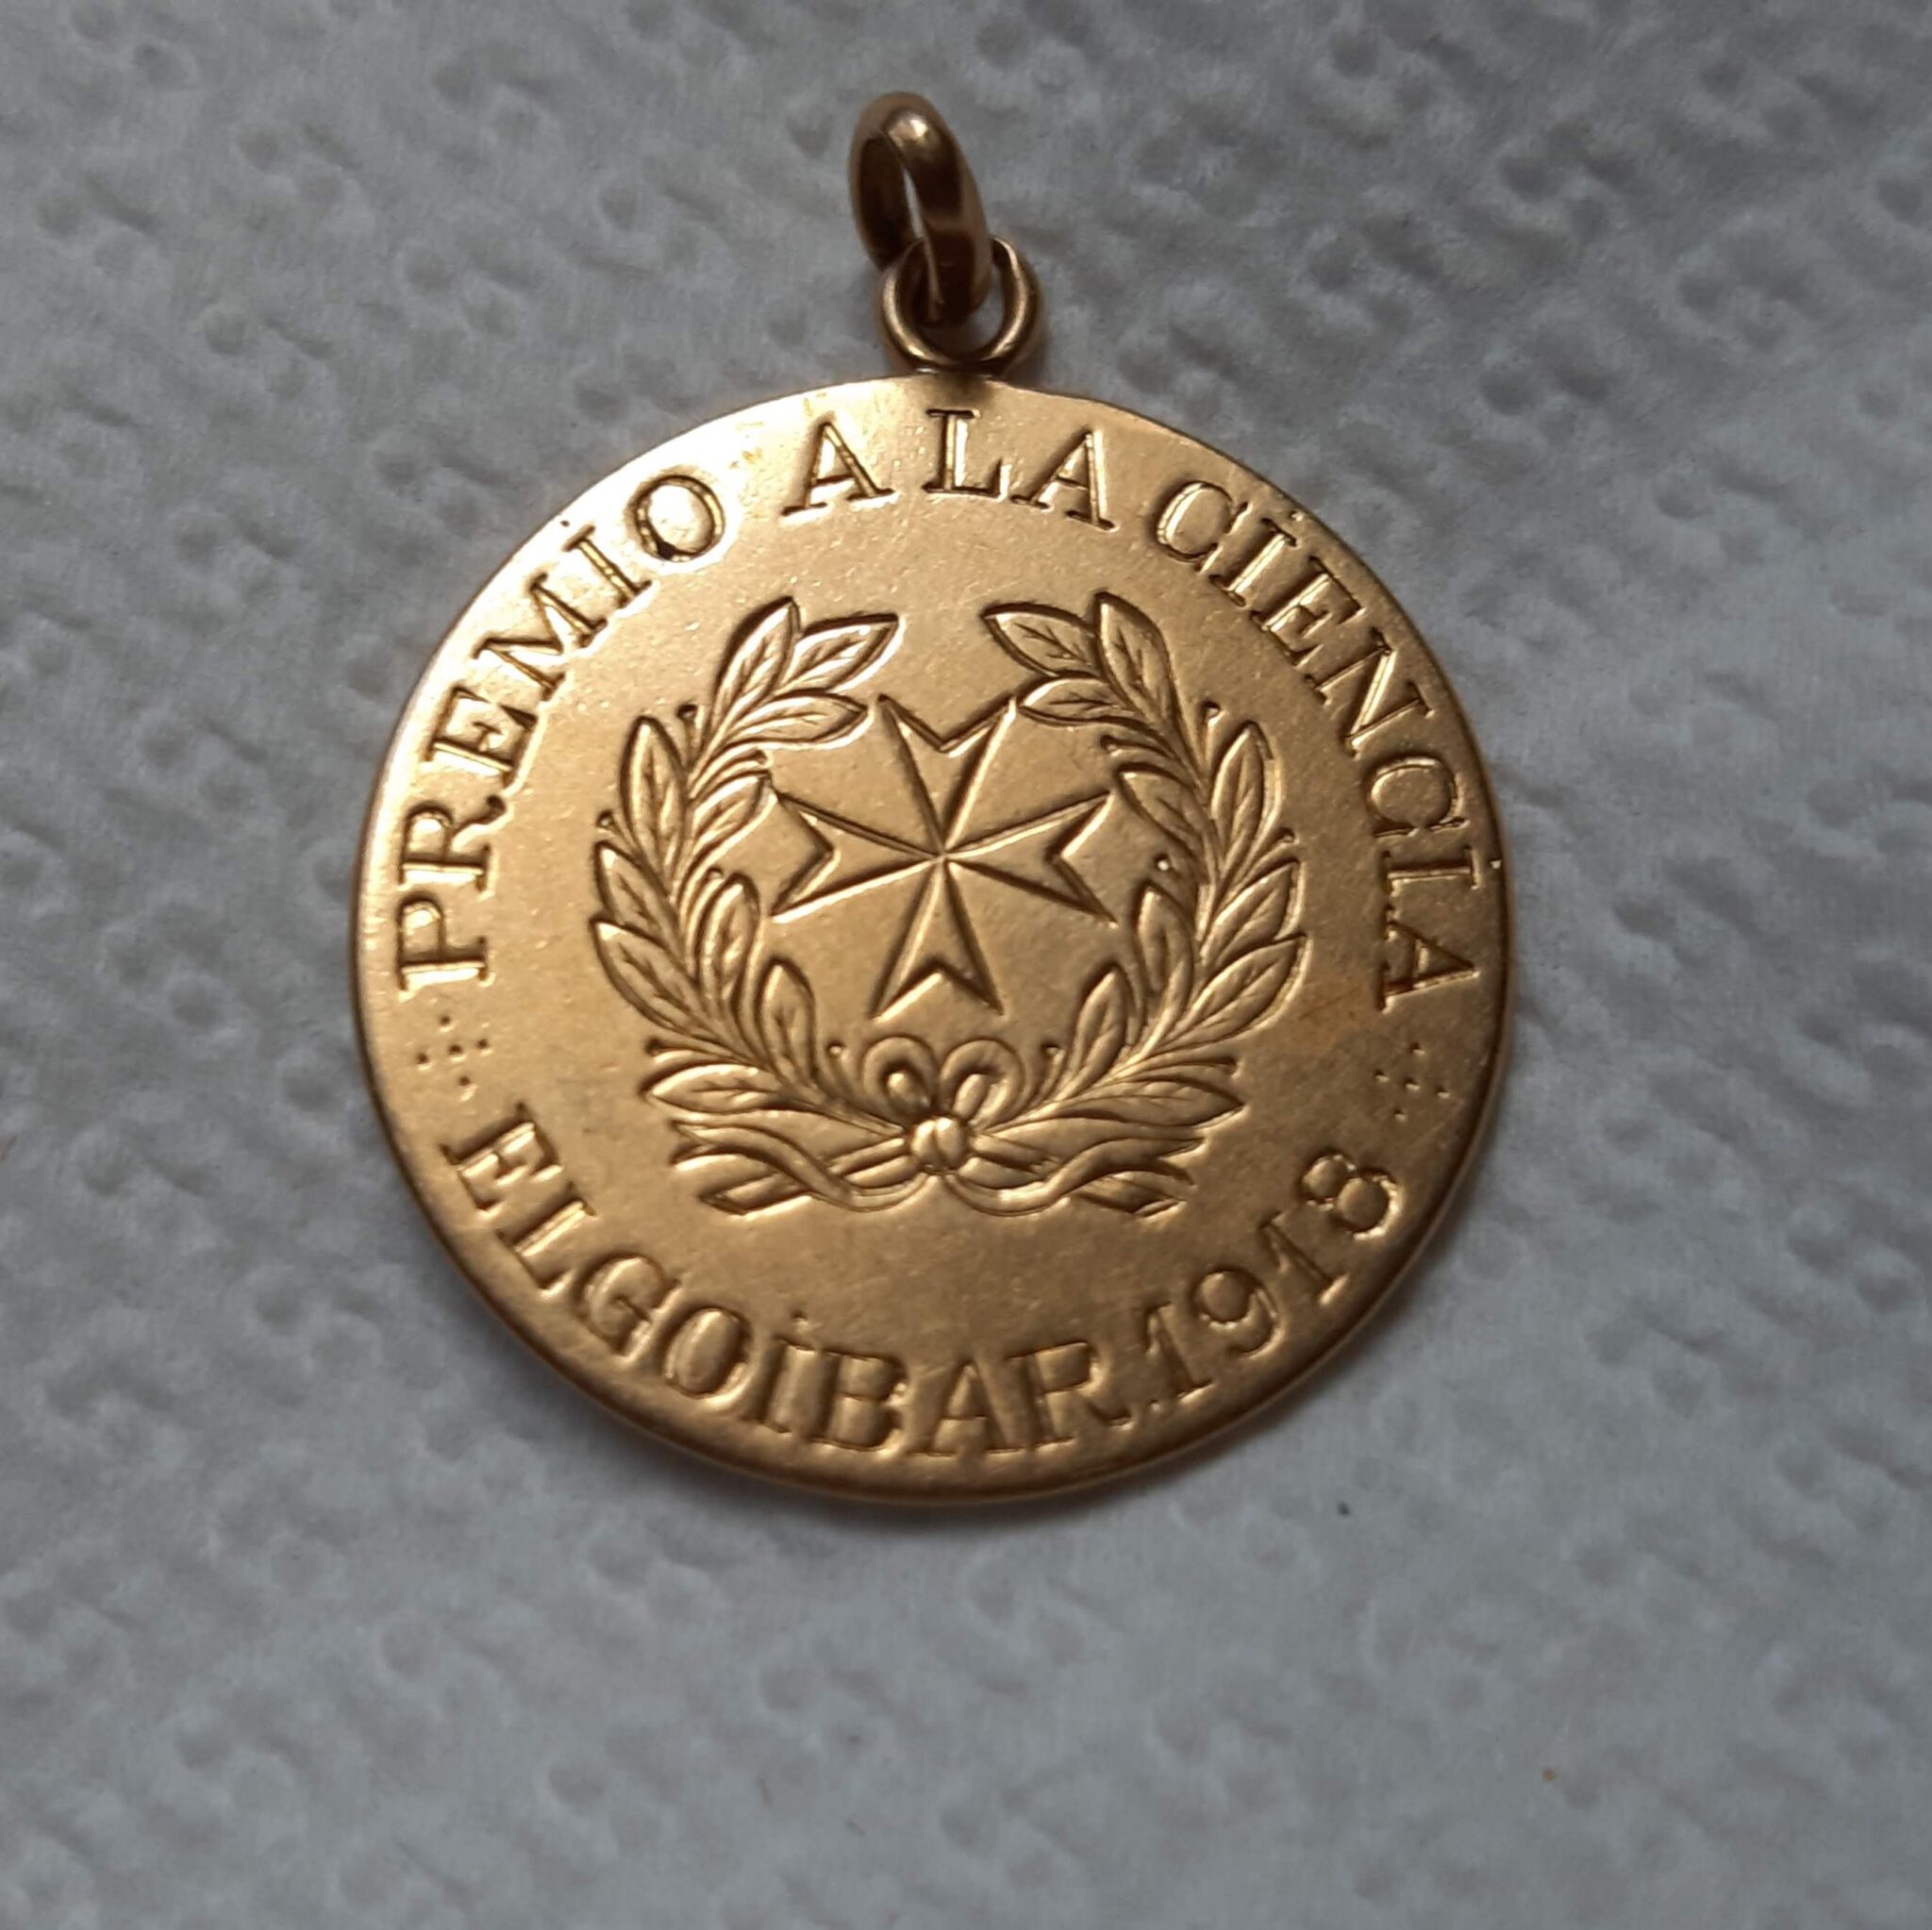 Medalla cara 1 scaled - El médico que se ganó el corazón de Elgoibar durante la gripe española